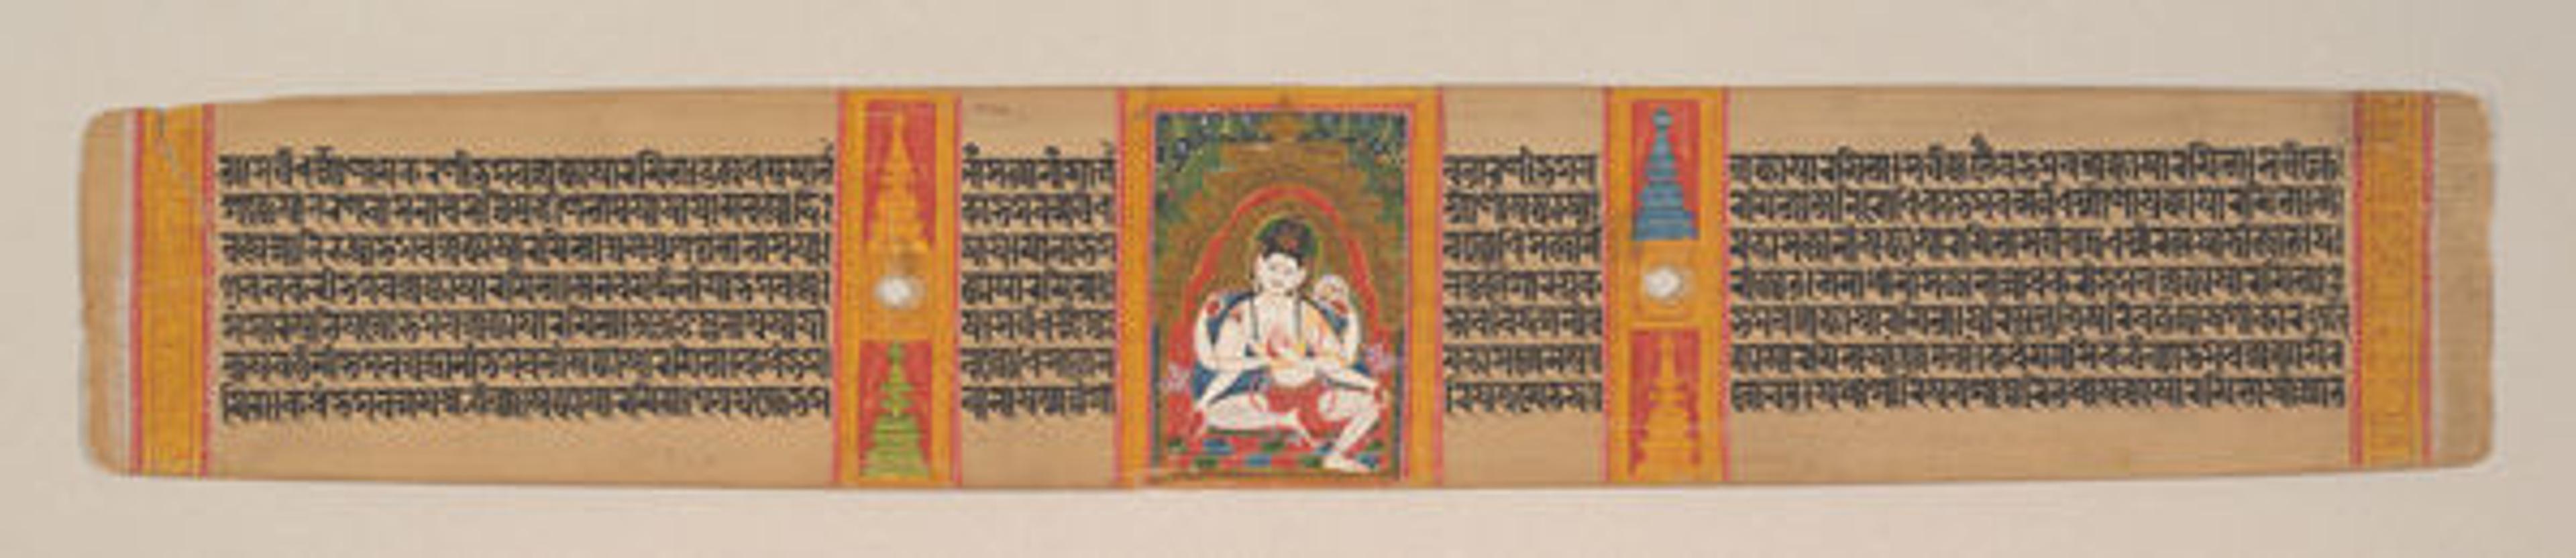 Avalokitesvara Expounding the Dharma: Folio from a Manuscript of the Ashtasahasrika Prajnaparamita (Perfection of Wisdom)